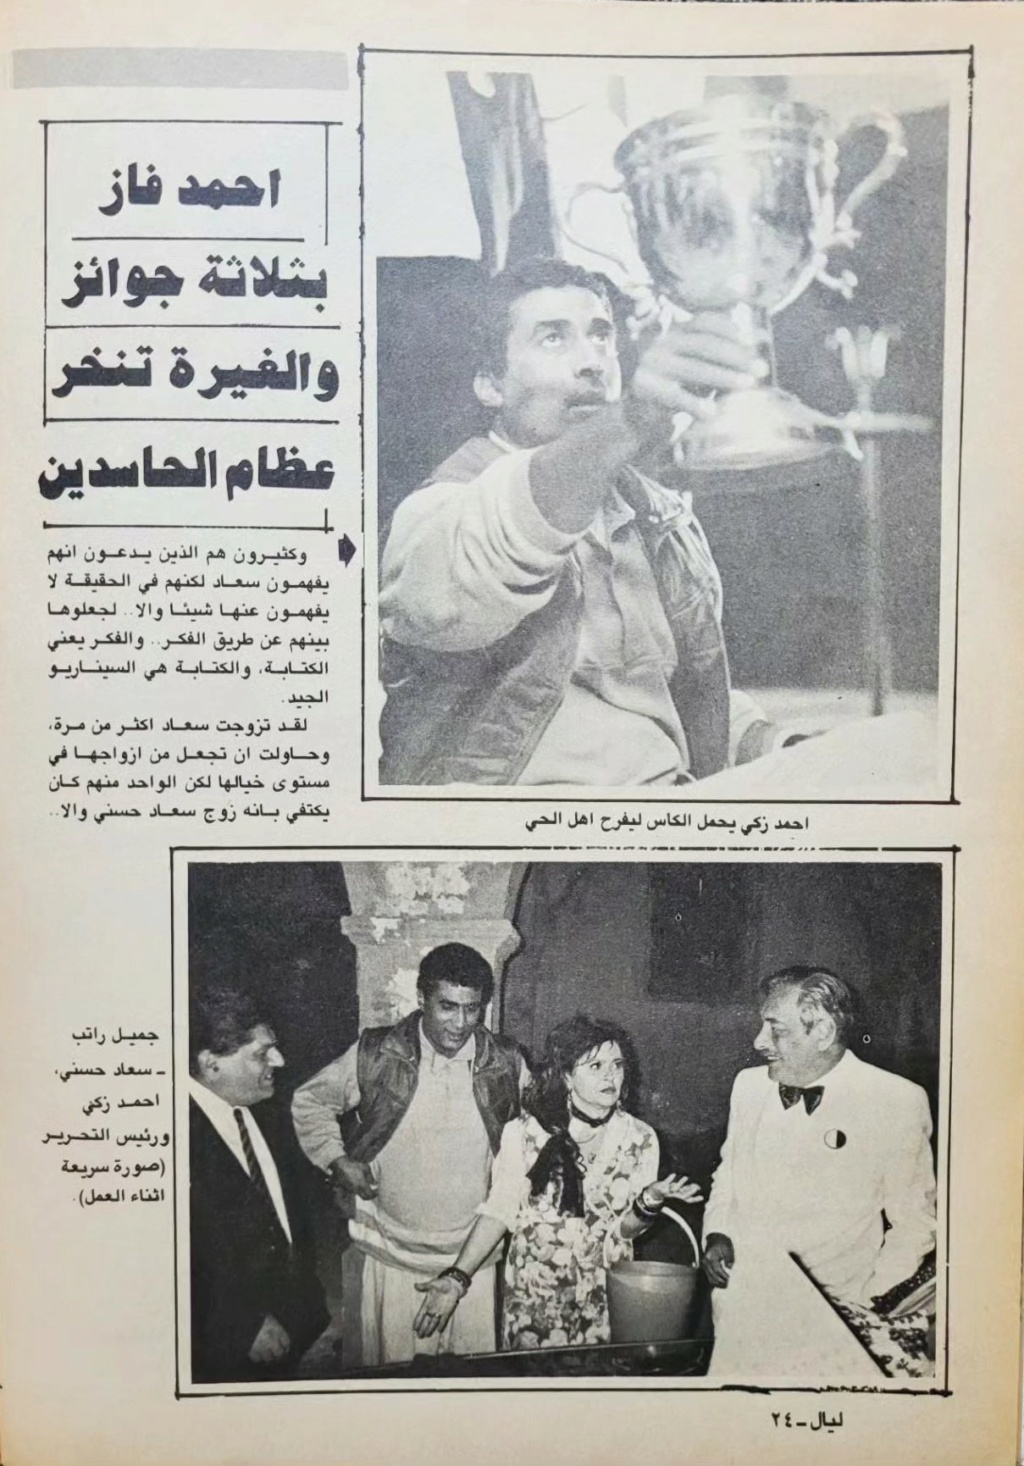 سعاد - مقال صحفي : سهرة مع سعاد حسني 1988 م 326